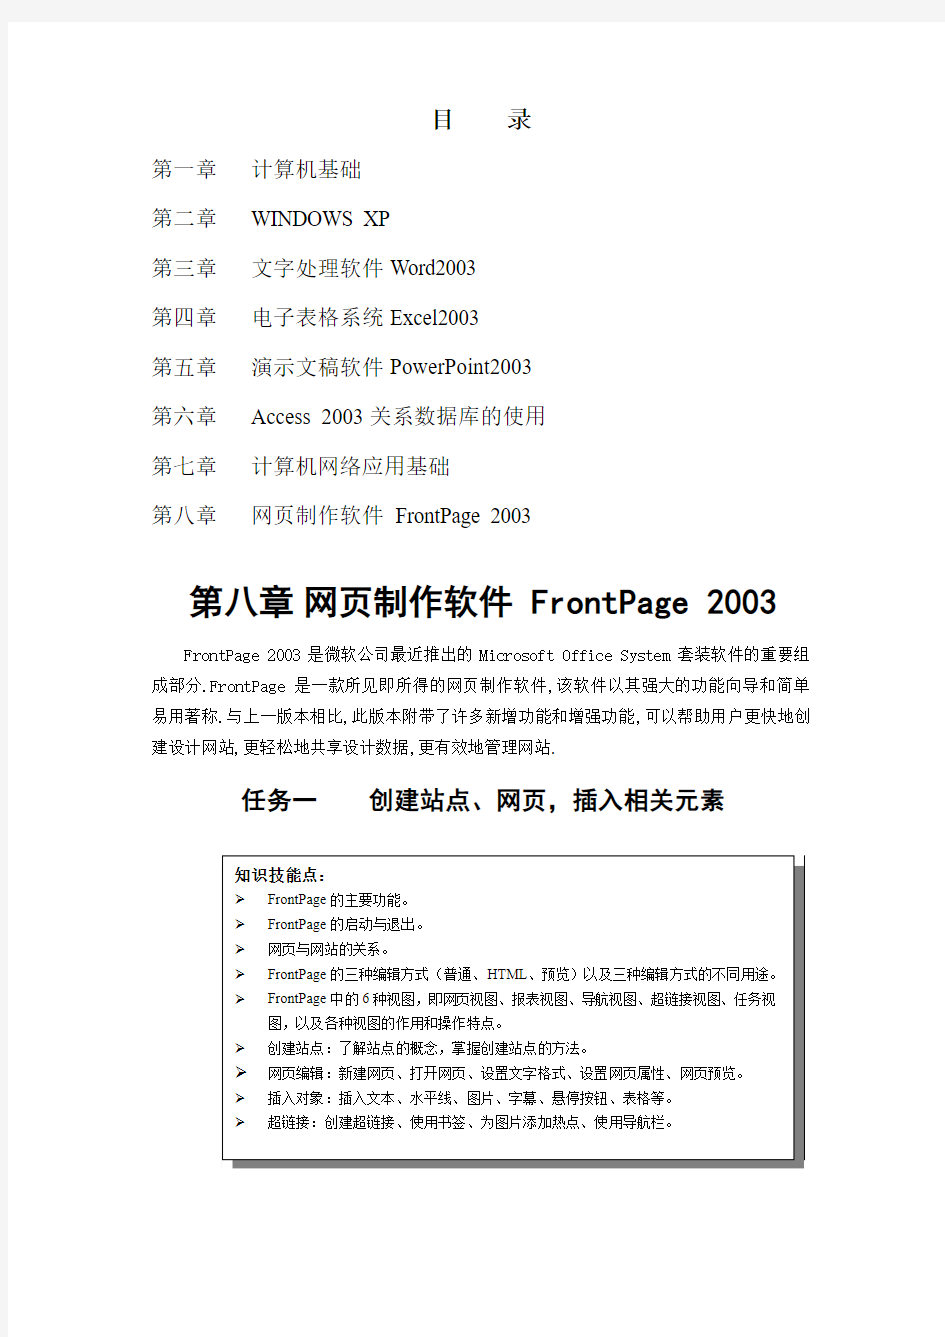 第八章_网页制作软件_FrontPage_2003[1]